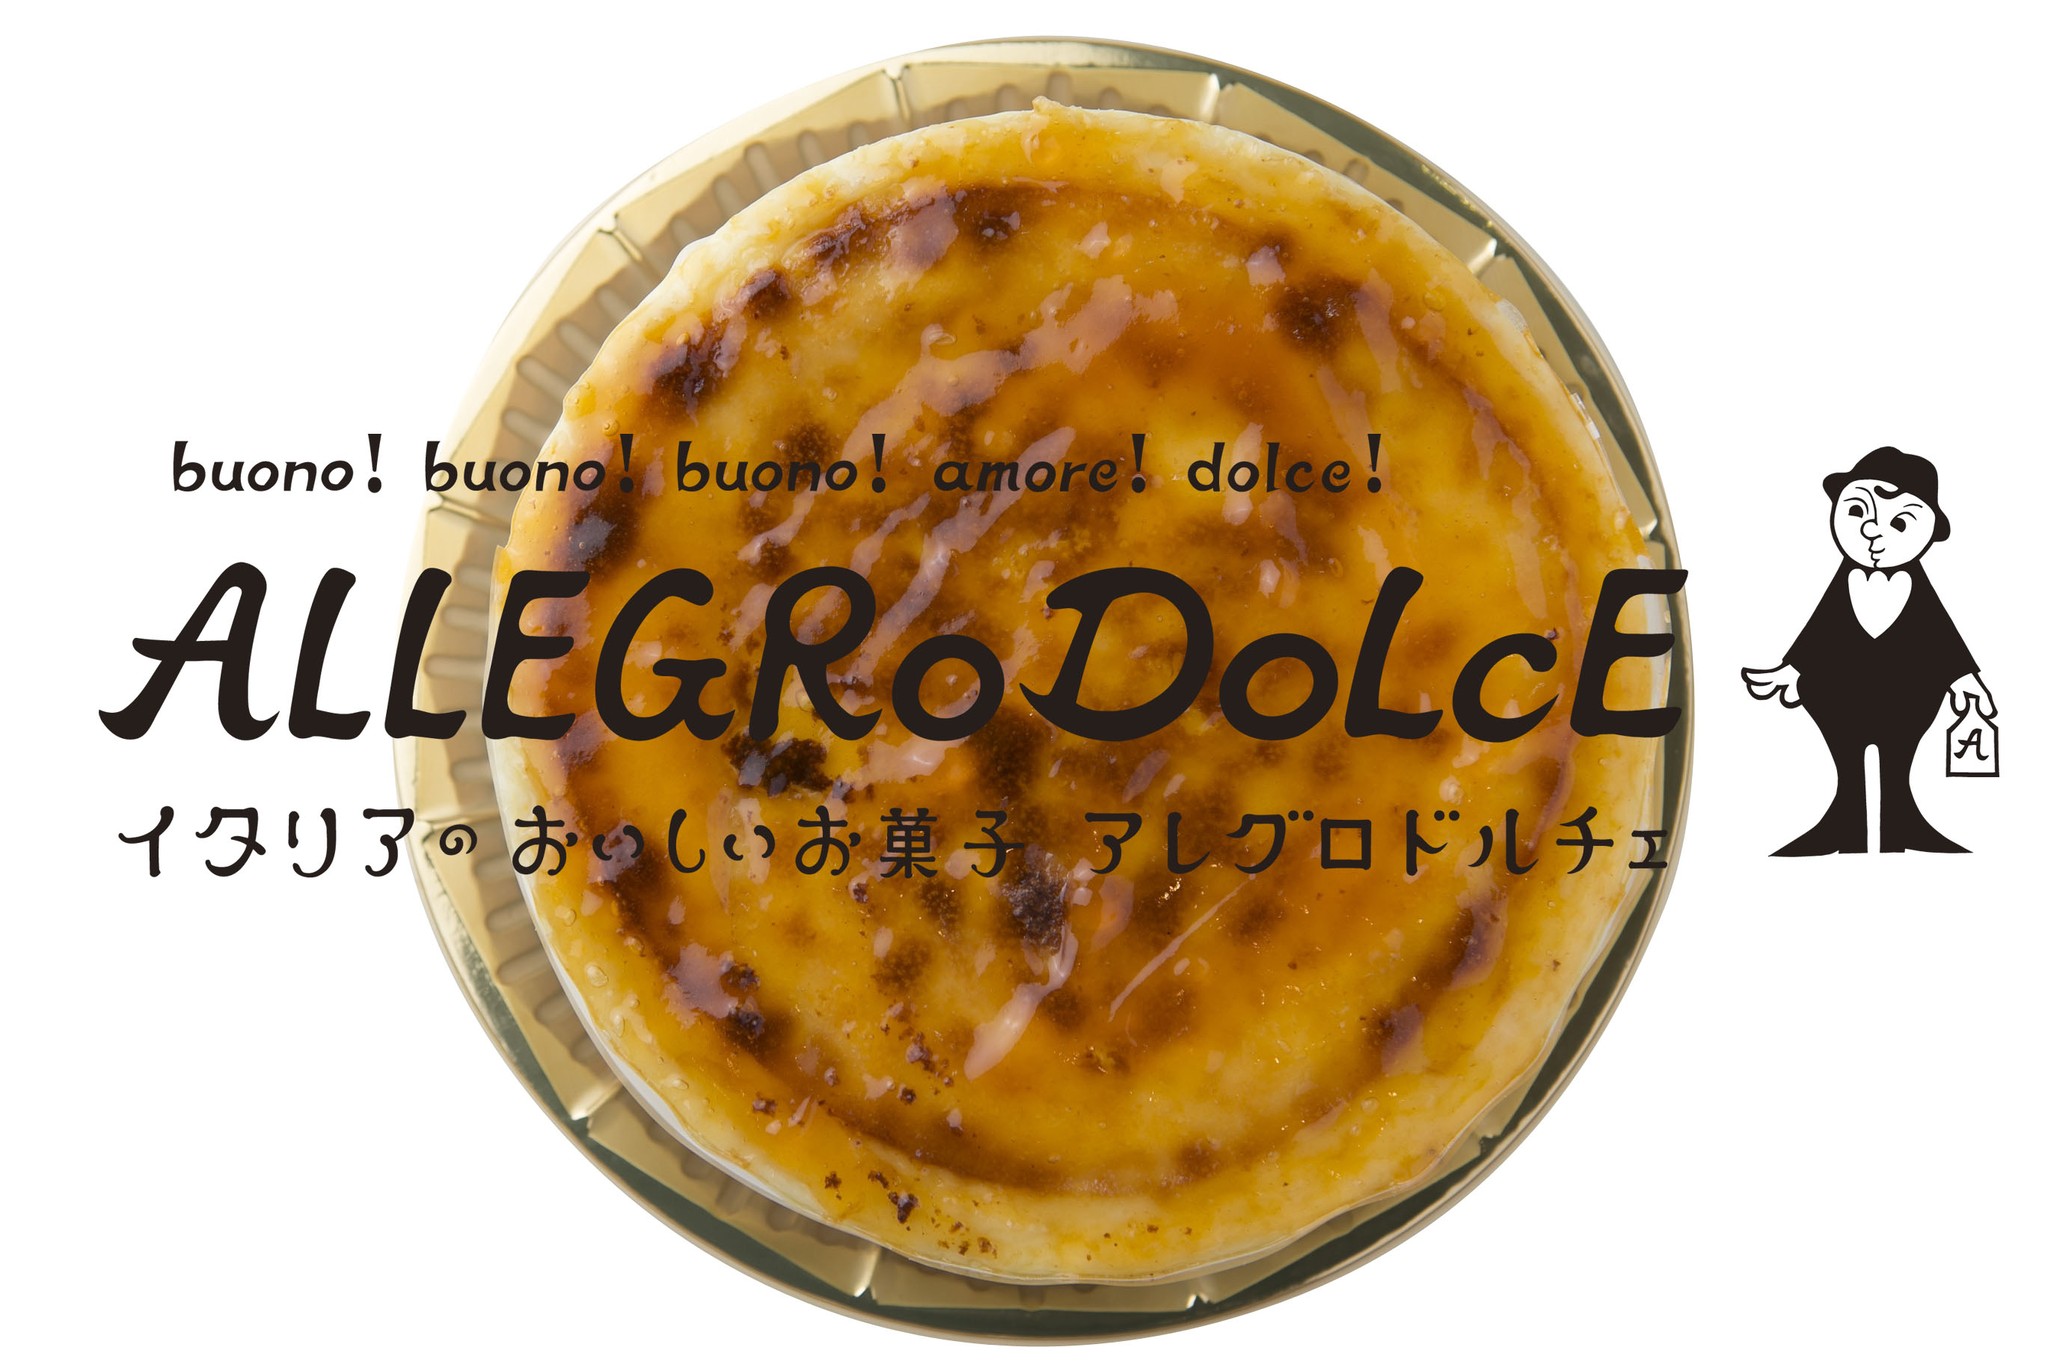 焼き菓子 Allegrodolce 通販 公式オンラインショップ